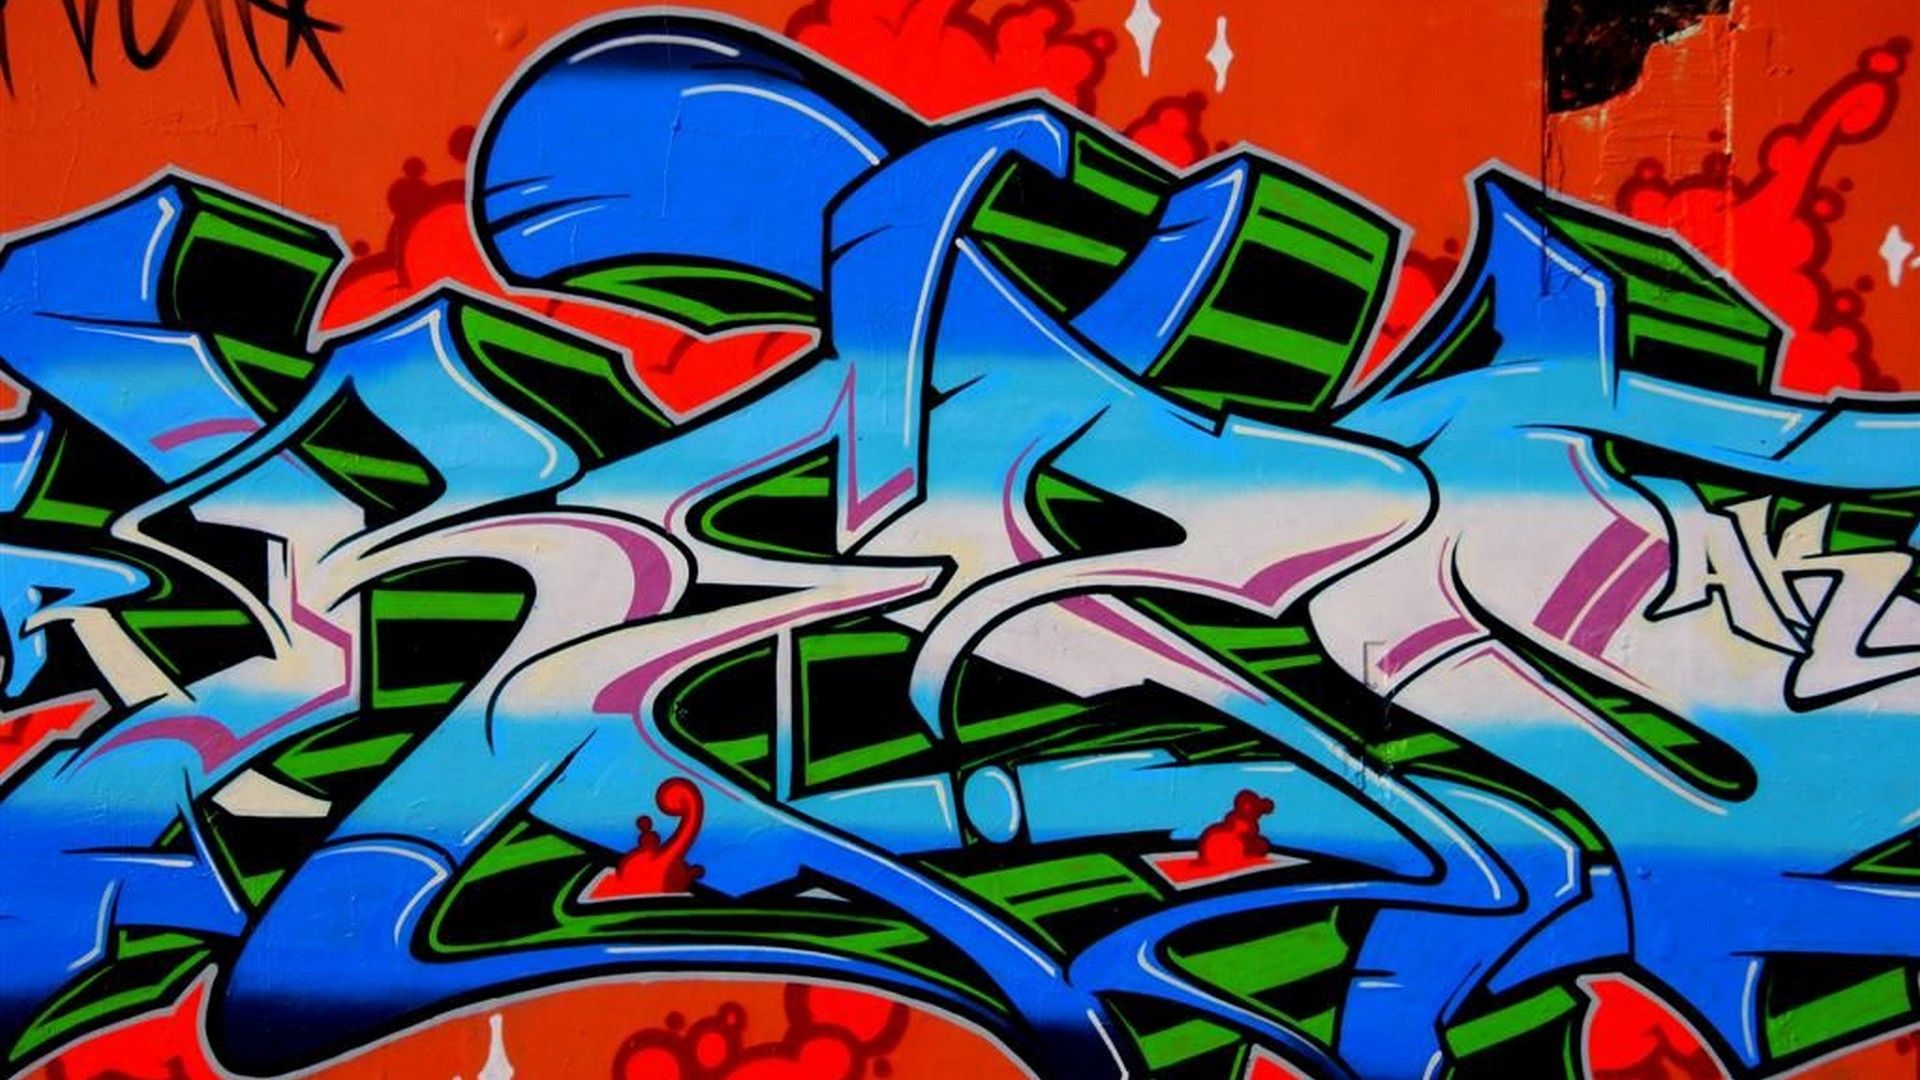 Wallpaper HD Graffiti Letters Wallpaper HD. Graffiti wallpaper, Graffiti lettering, Graffiti furniture